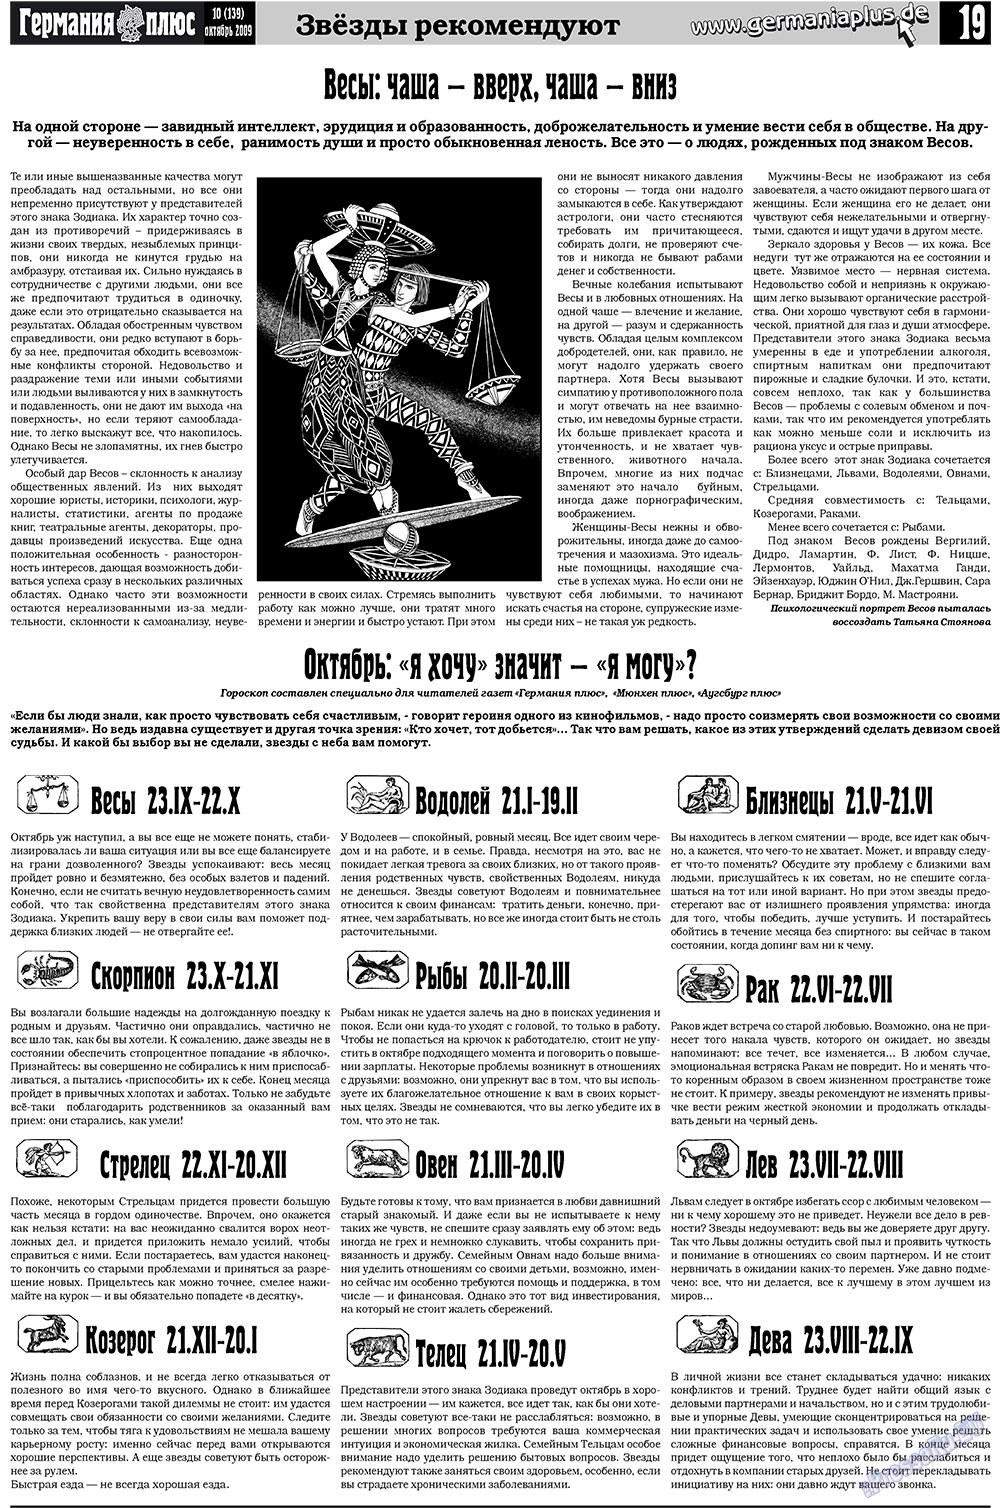 Германия плюс, газета. 2009 №10 стр.19